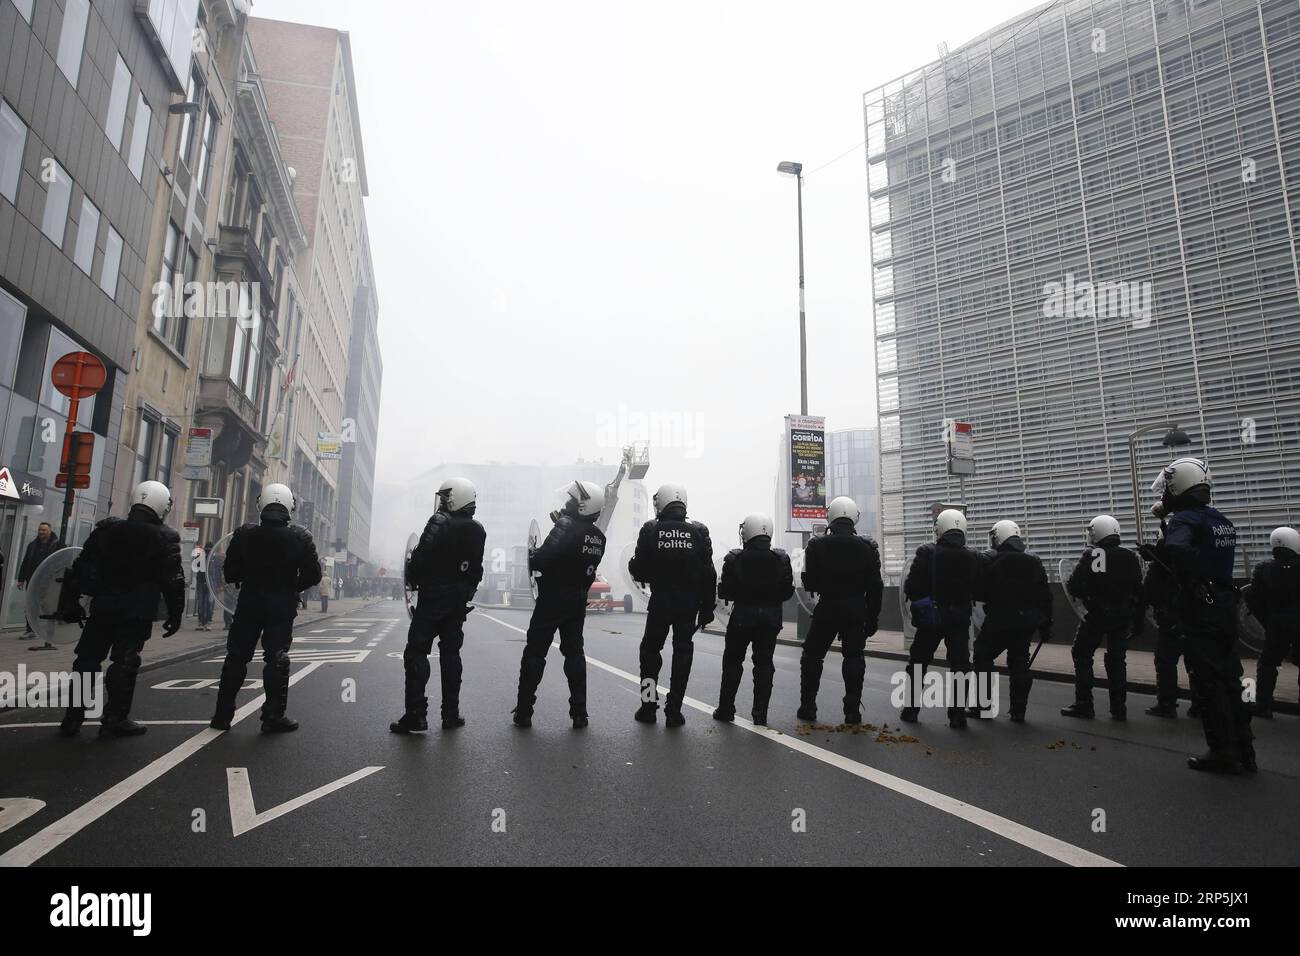 (181216) -- BRUXELLES, 16 dicembre 2018 -- agenti di polizia armati sorvegliano contro i manifestanti durante la manifestazione di marcia contro Marrakech davanti alla sede centrale delle istituzioni dell'Unione europea a Bruxelles, in Belgio, 16 dicembre 2018. I manifestanti belgi anti-immigrazione sono scesi per le strade di Bruxelles qui domenica per denunciare il Global Compact per una migrazione sicura, ordinata e regolare adottato a Marrakech, in Marocco. ) BELGIO-BRUXELLES-ANTI-IMMIGRAZIONE-RALLY-PROTESTA YEXPINGFAN PUBLICATIONXNOTXINXCHN Foto Stock